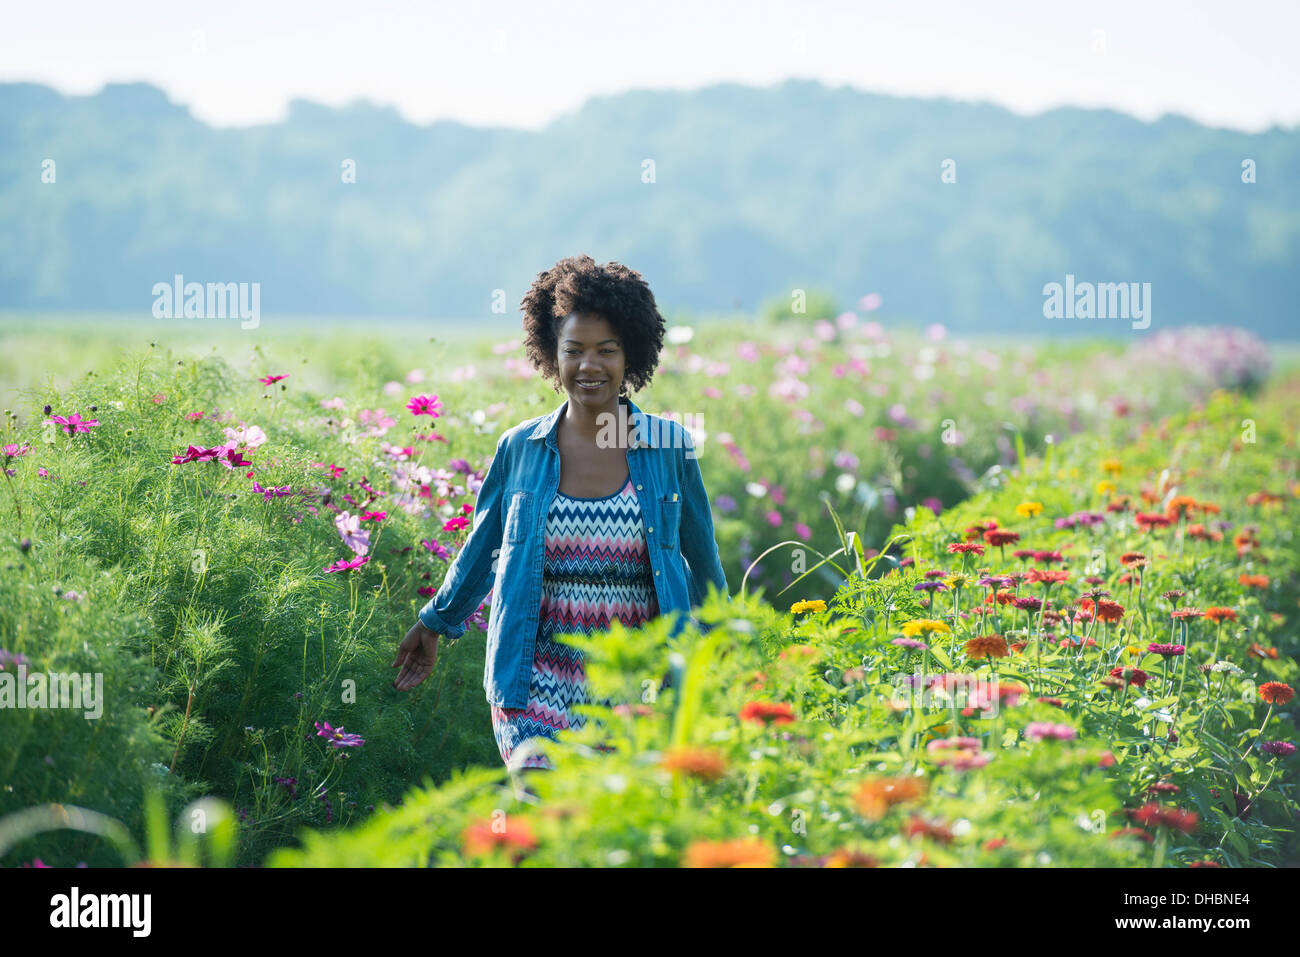 Eine Frau unter den Blumen wachsen in den Feldern stehen. Kosmos von rosa und weißen Blüten. Stockfoto